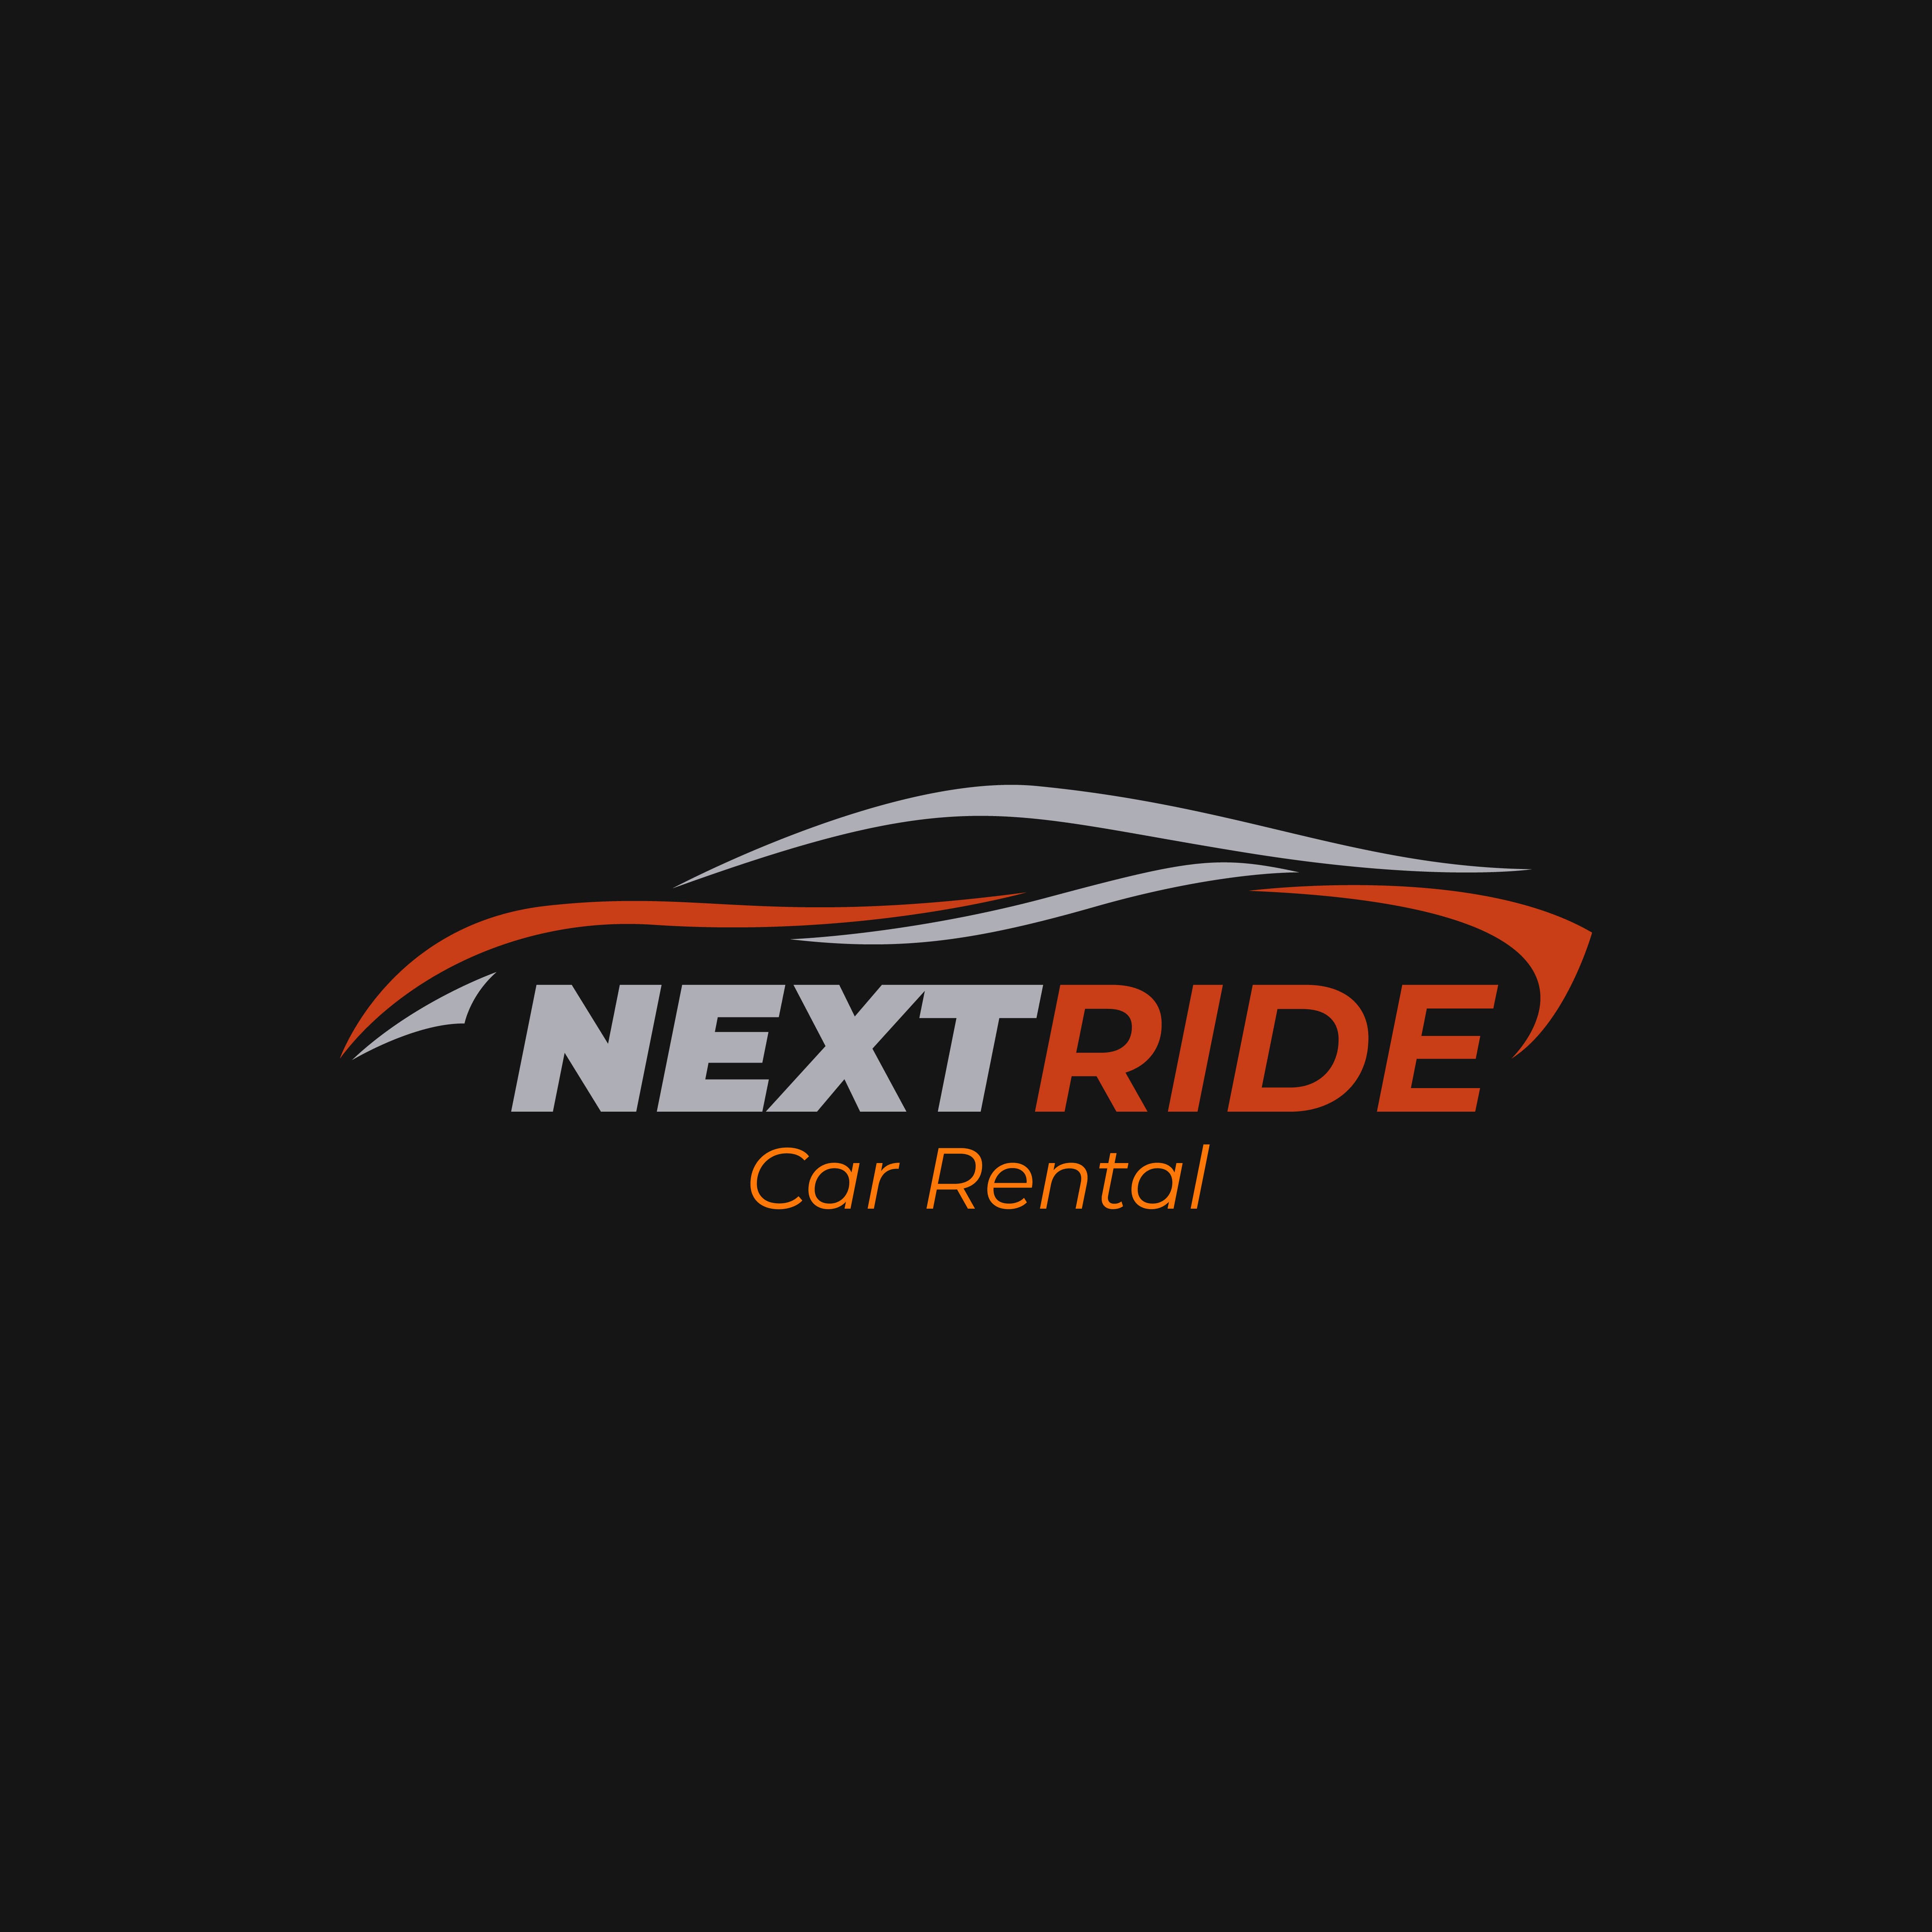 Next Ride Car Rental